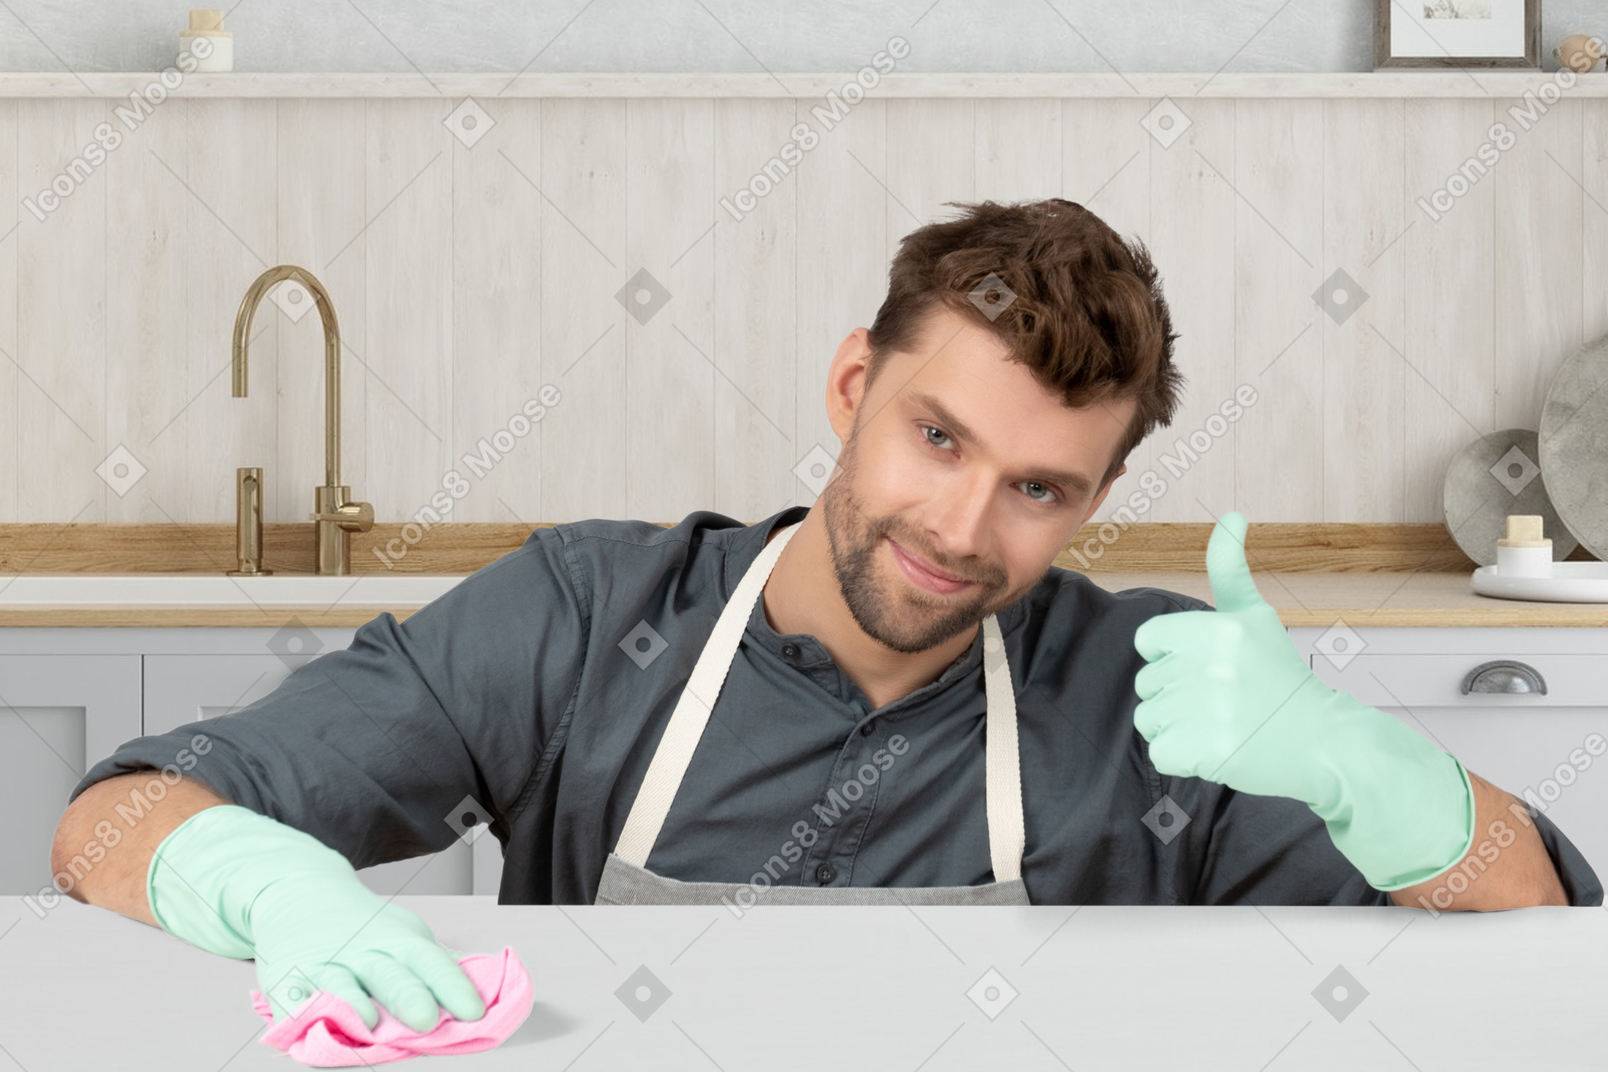 Hombre con guantes de goma limpiando la cocina